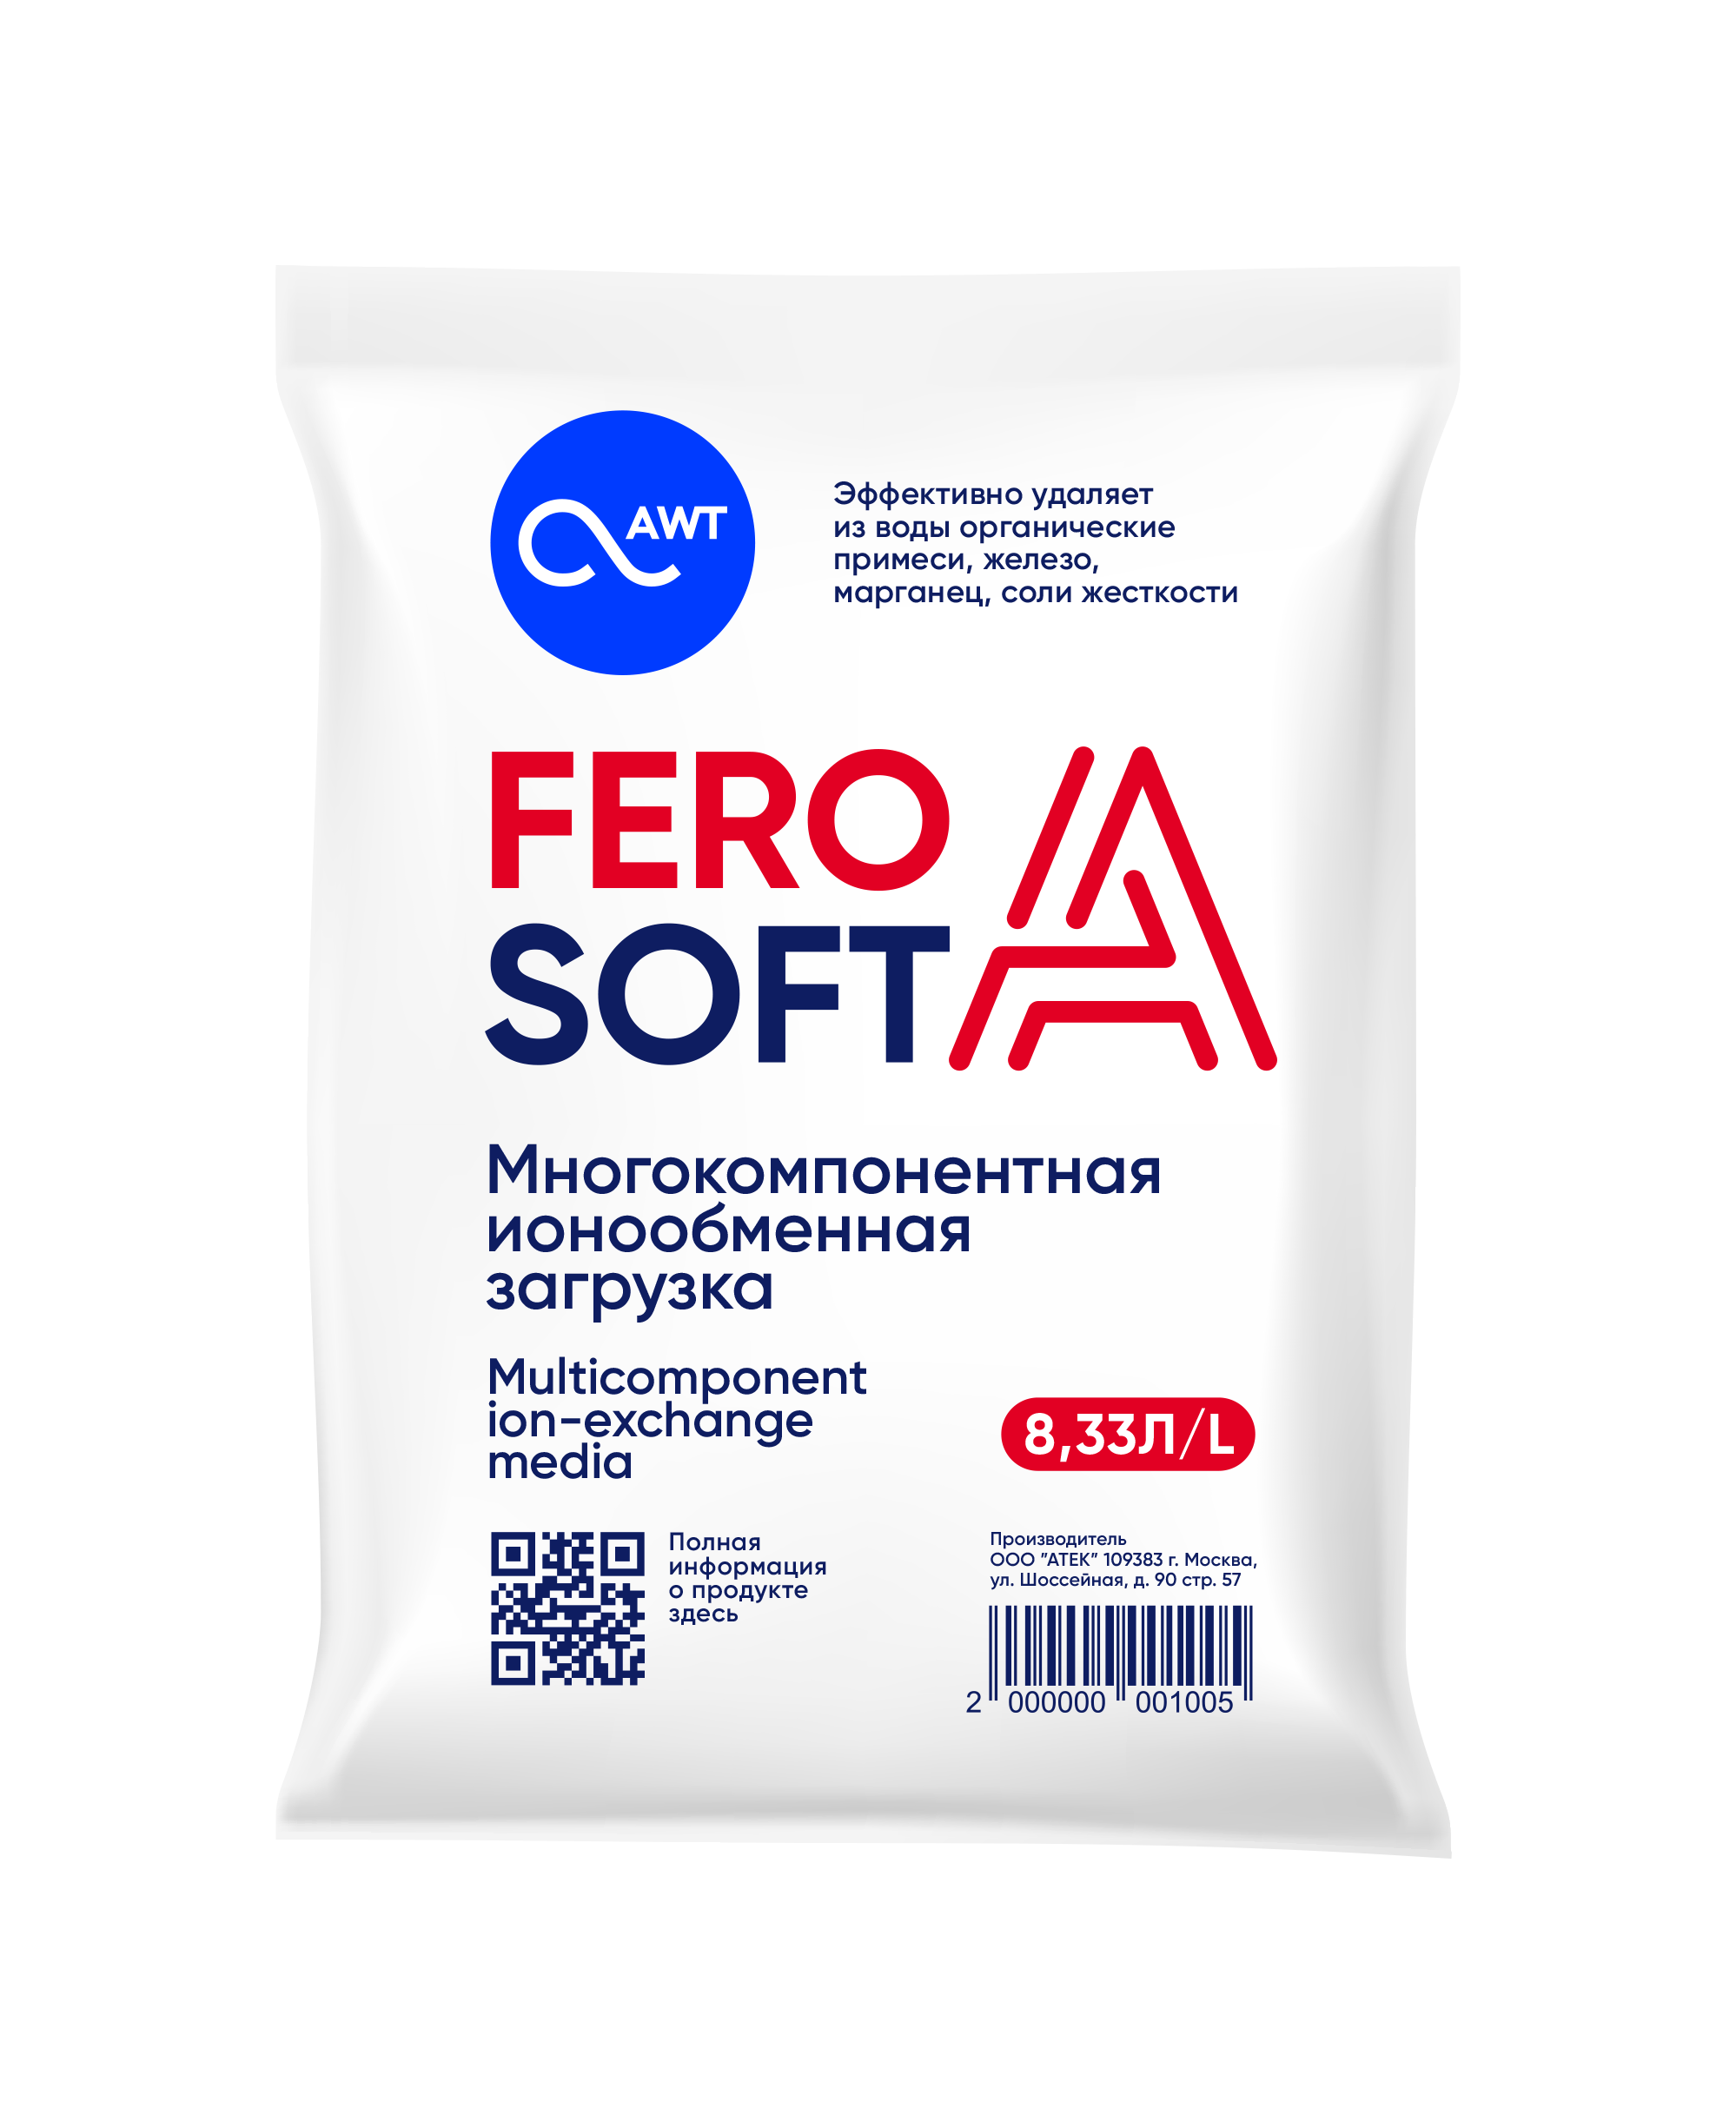  Многокомпонентная загрузка FeroSoft-A (8,33л, 6,7 кг)